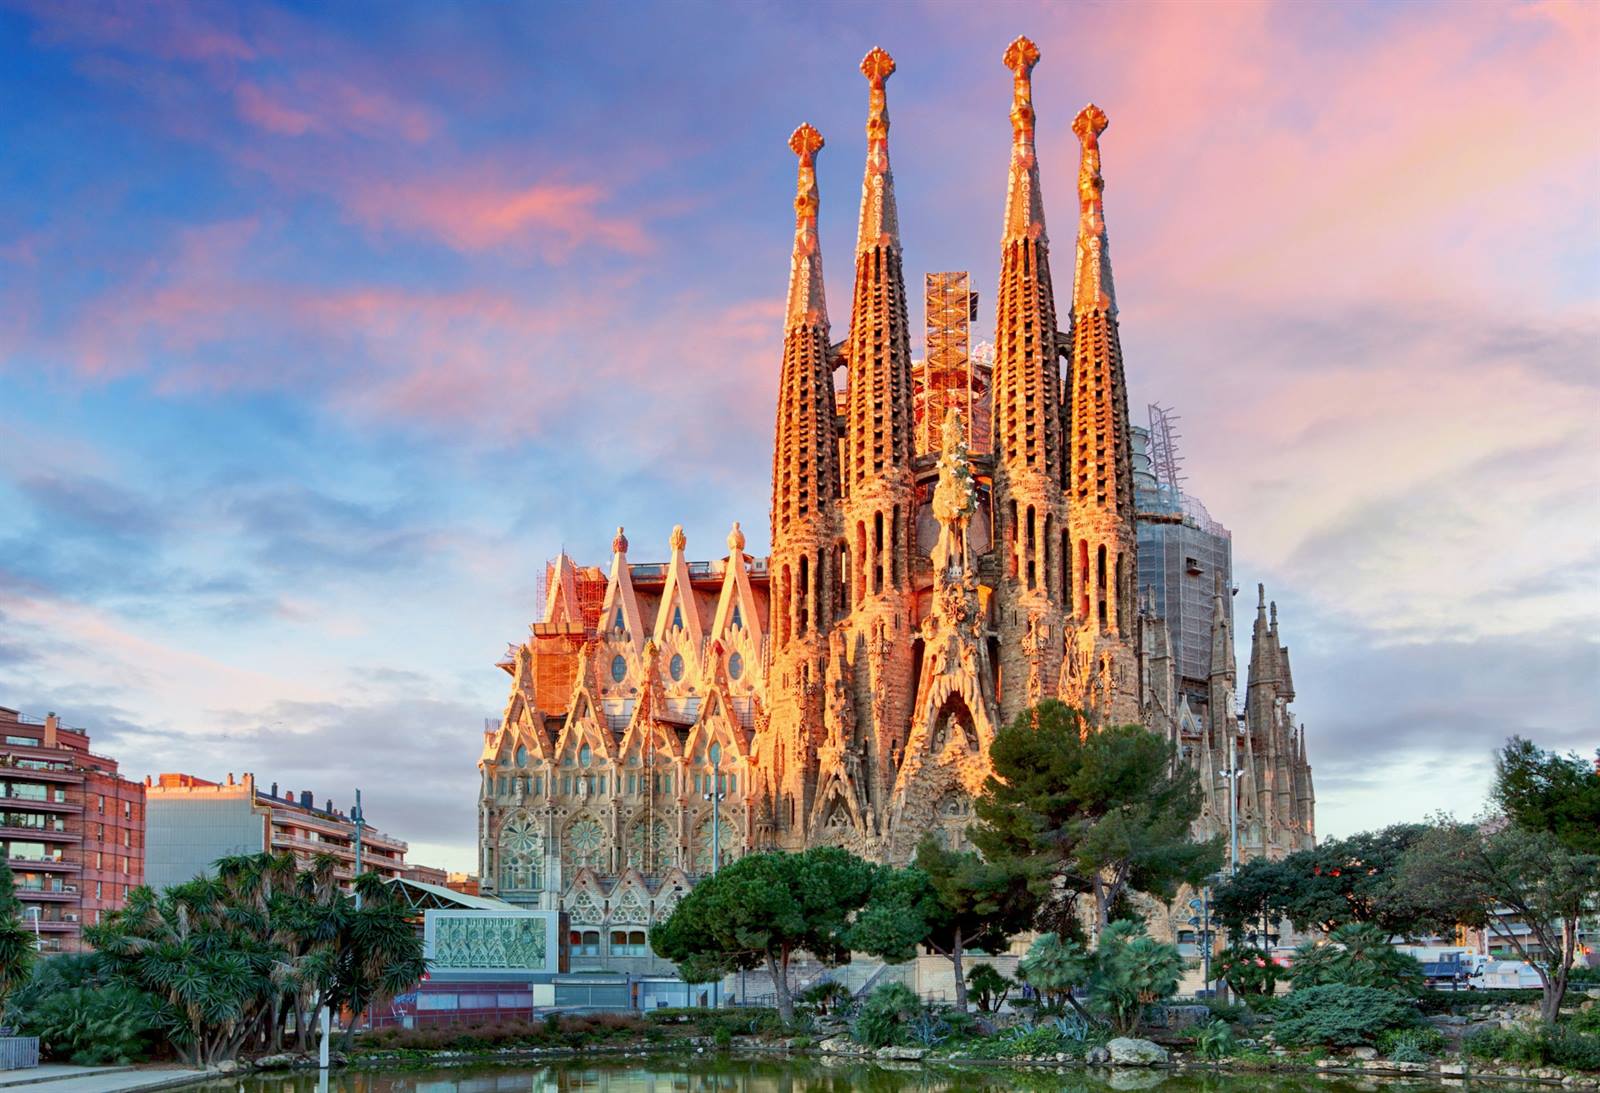 hoog Iets erfgoed Sagrada Familia bezoeken? Tips, tickets + hoe wachtrijen vermijden?